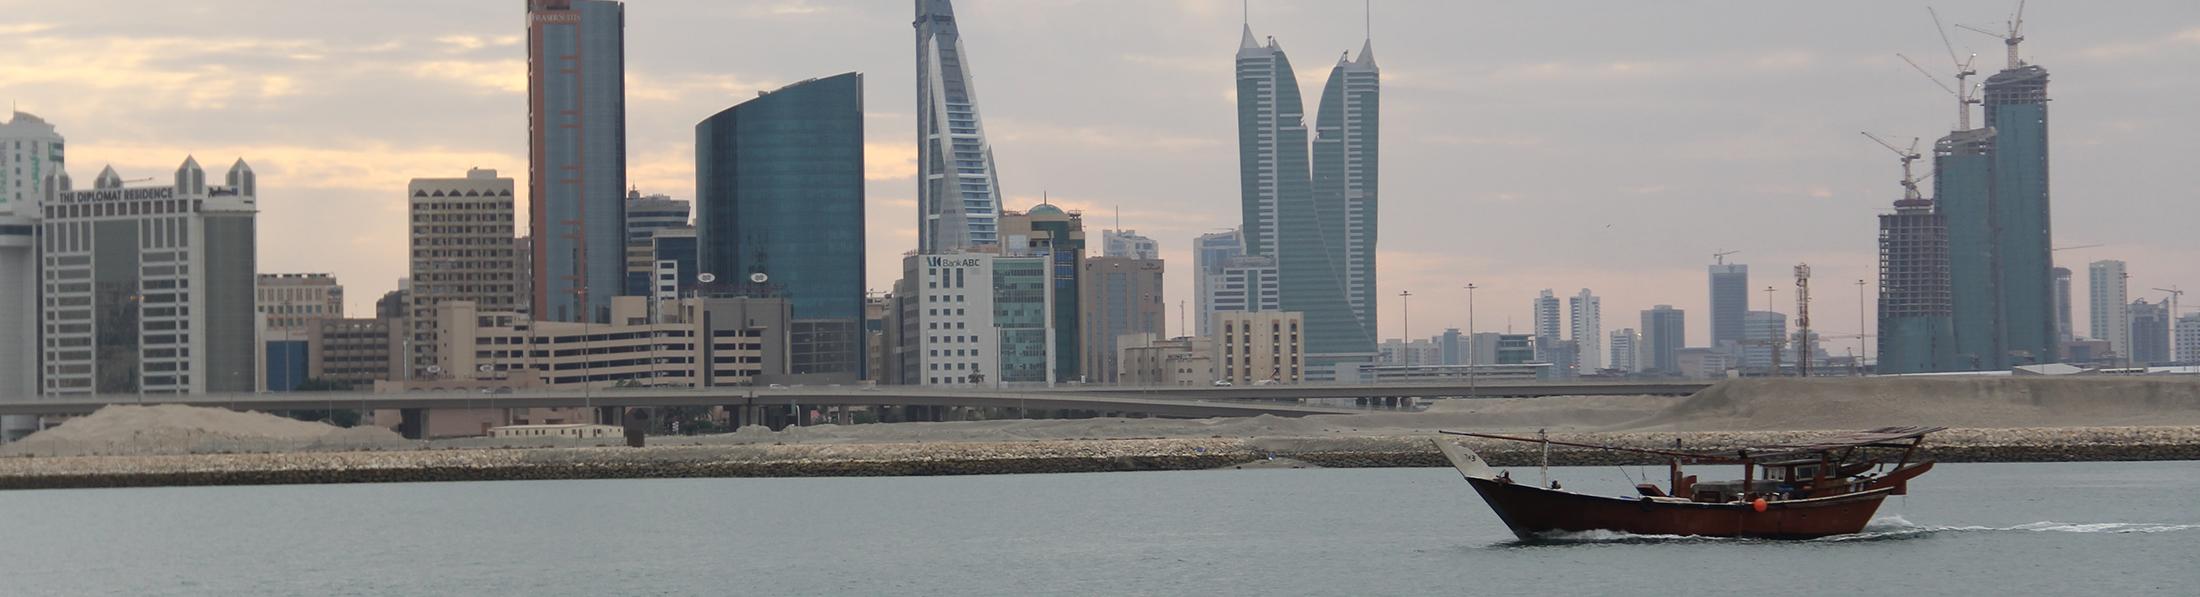 Best Training Courses in Manama - Bahrain